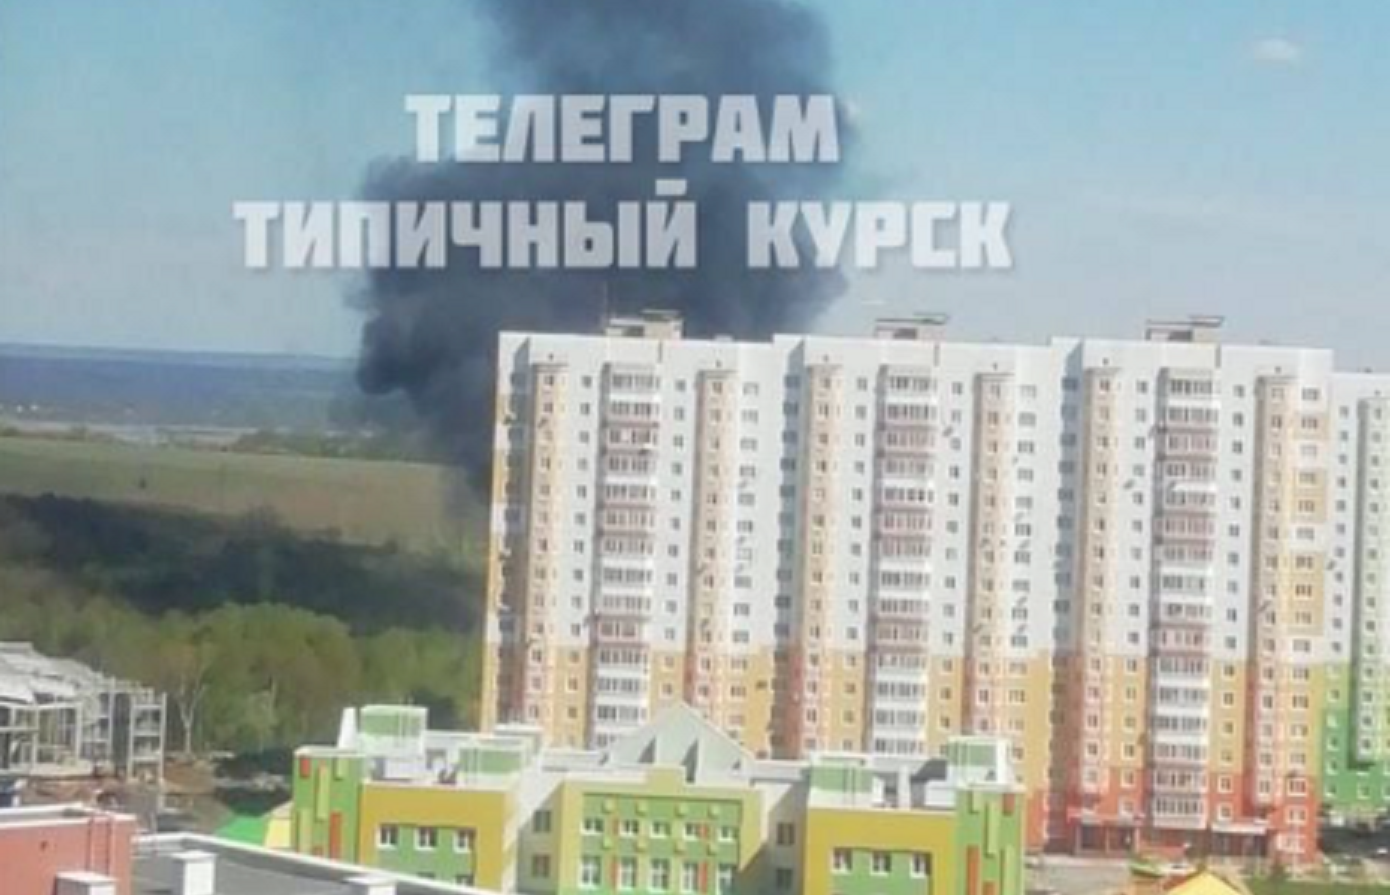 Ουκρανική αντεπίθεση με drones – Στις φλόγες δεξαμενή καυσίμων και υποσταθμοί ενέργειας στη Ρωσία